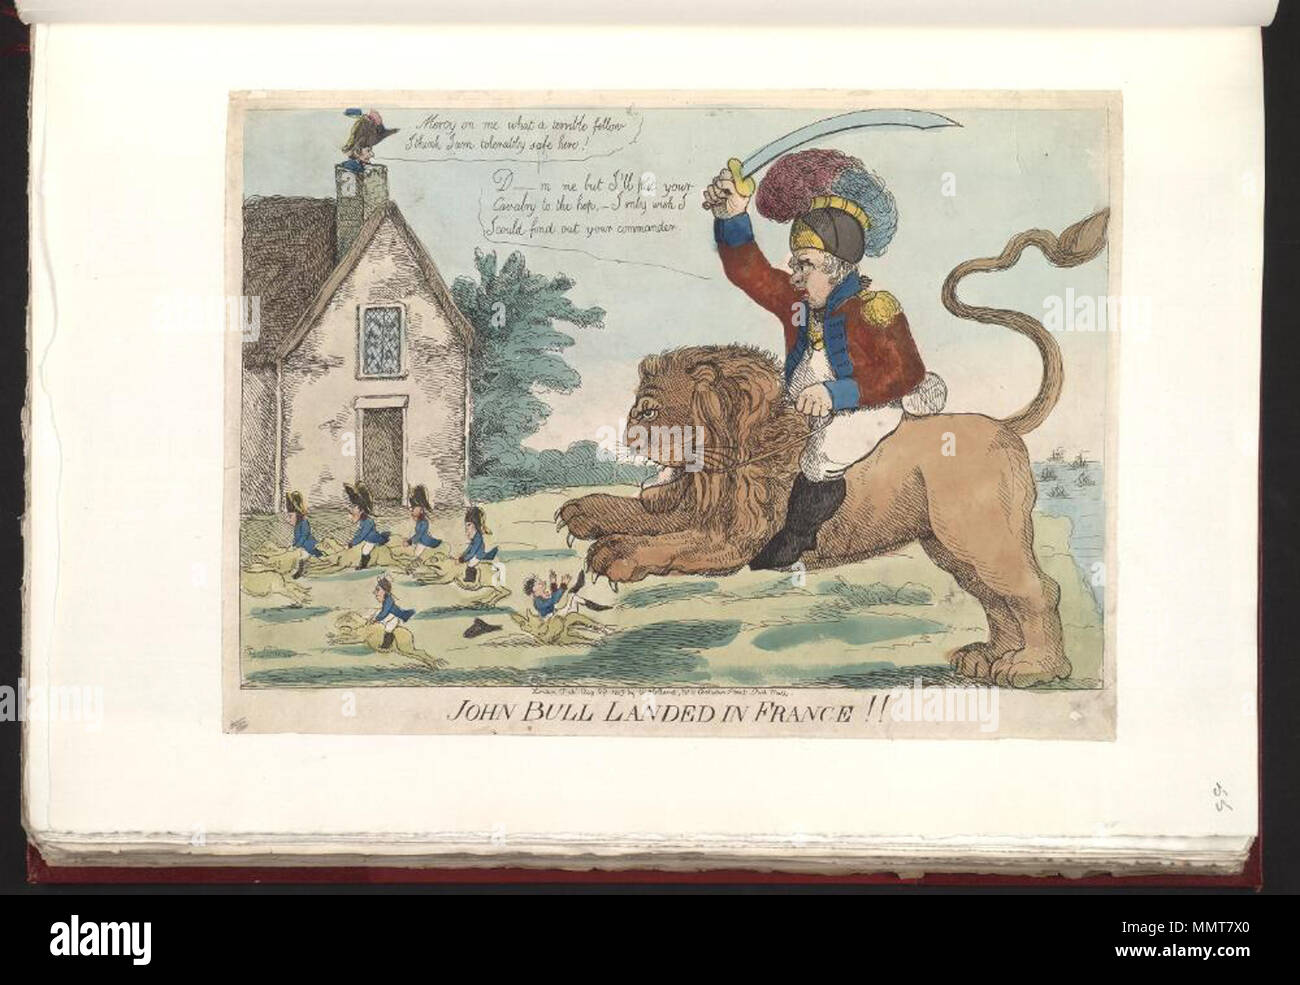 . Satire auf die Napoleonischen Kriege. (Britische politische Karikatur) John Bull landete in Frankreich!! 29. August 1803. Bodleian Bibliotheken, John Bull landete in Frankreich Stockfoto